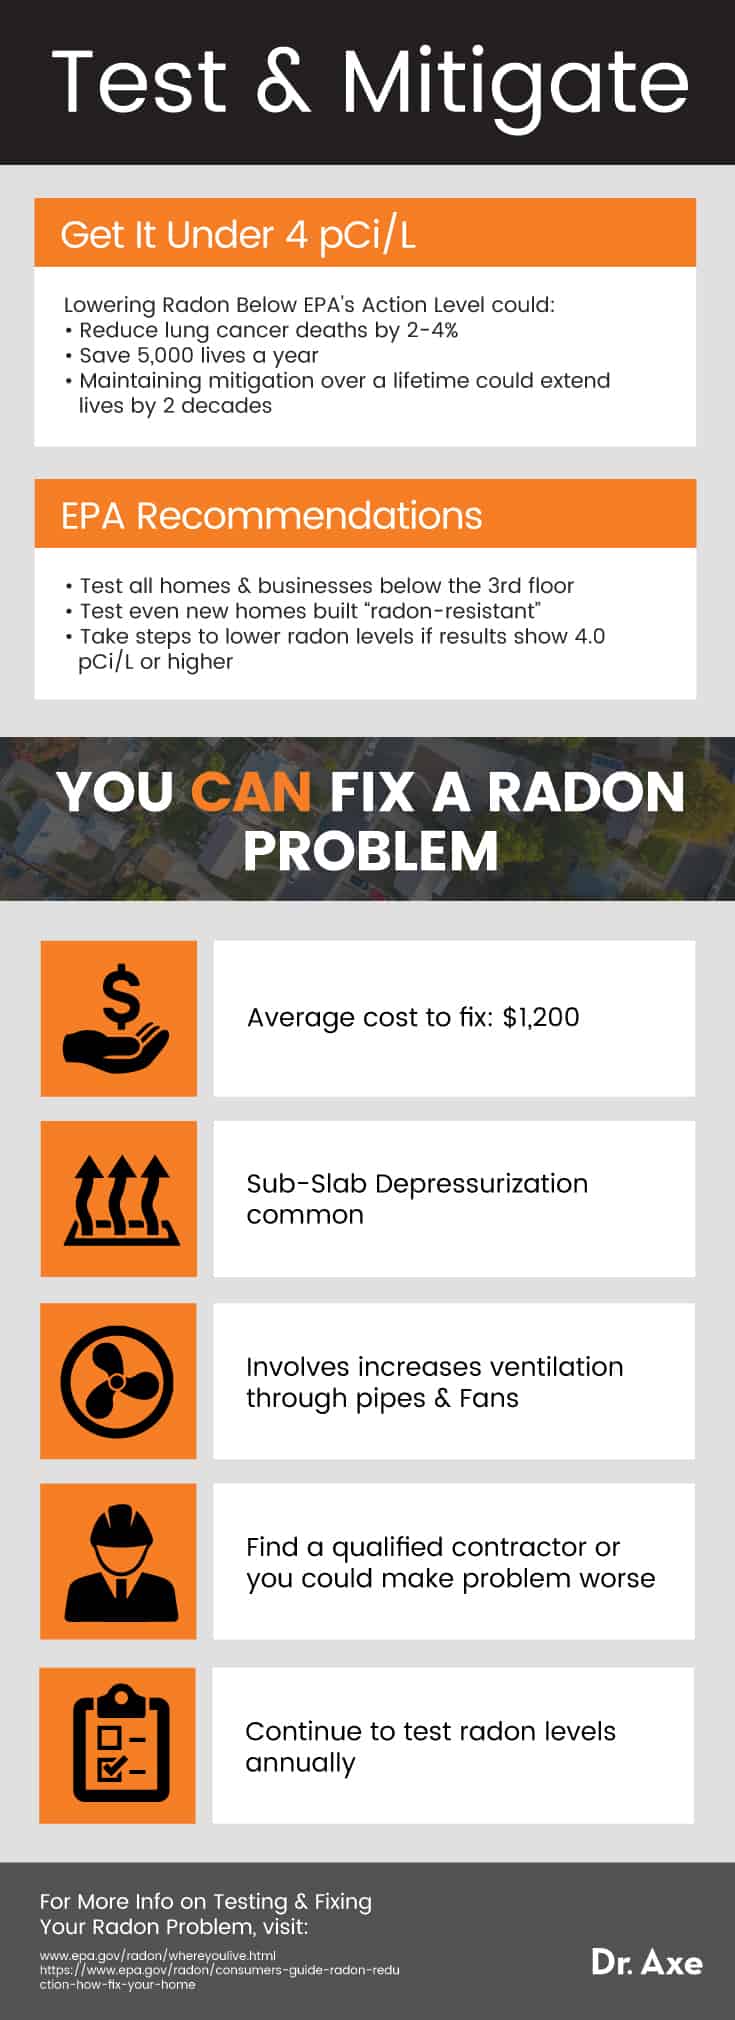 Radon symptoms - Dr. Axe